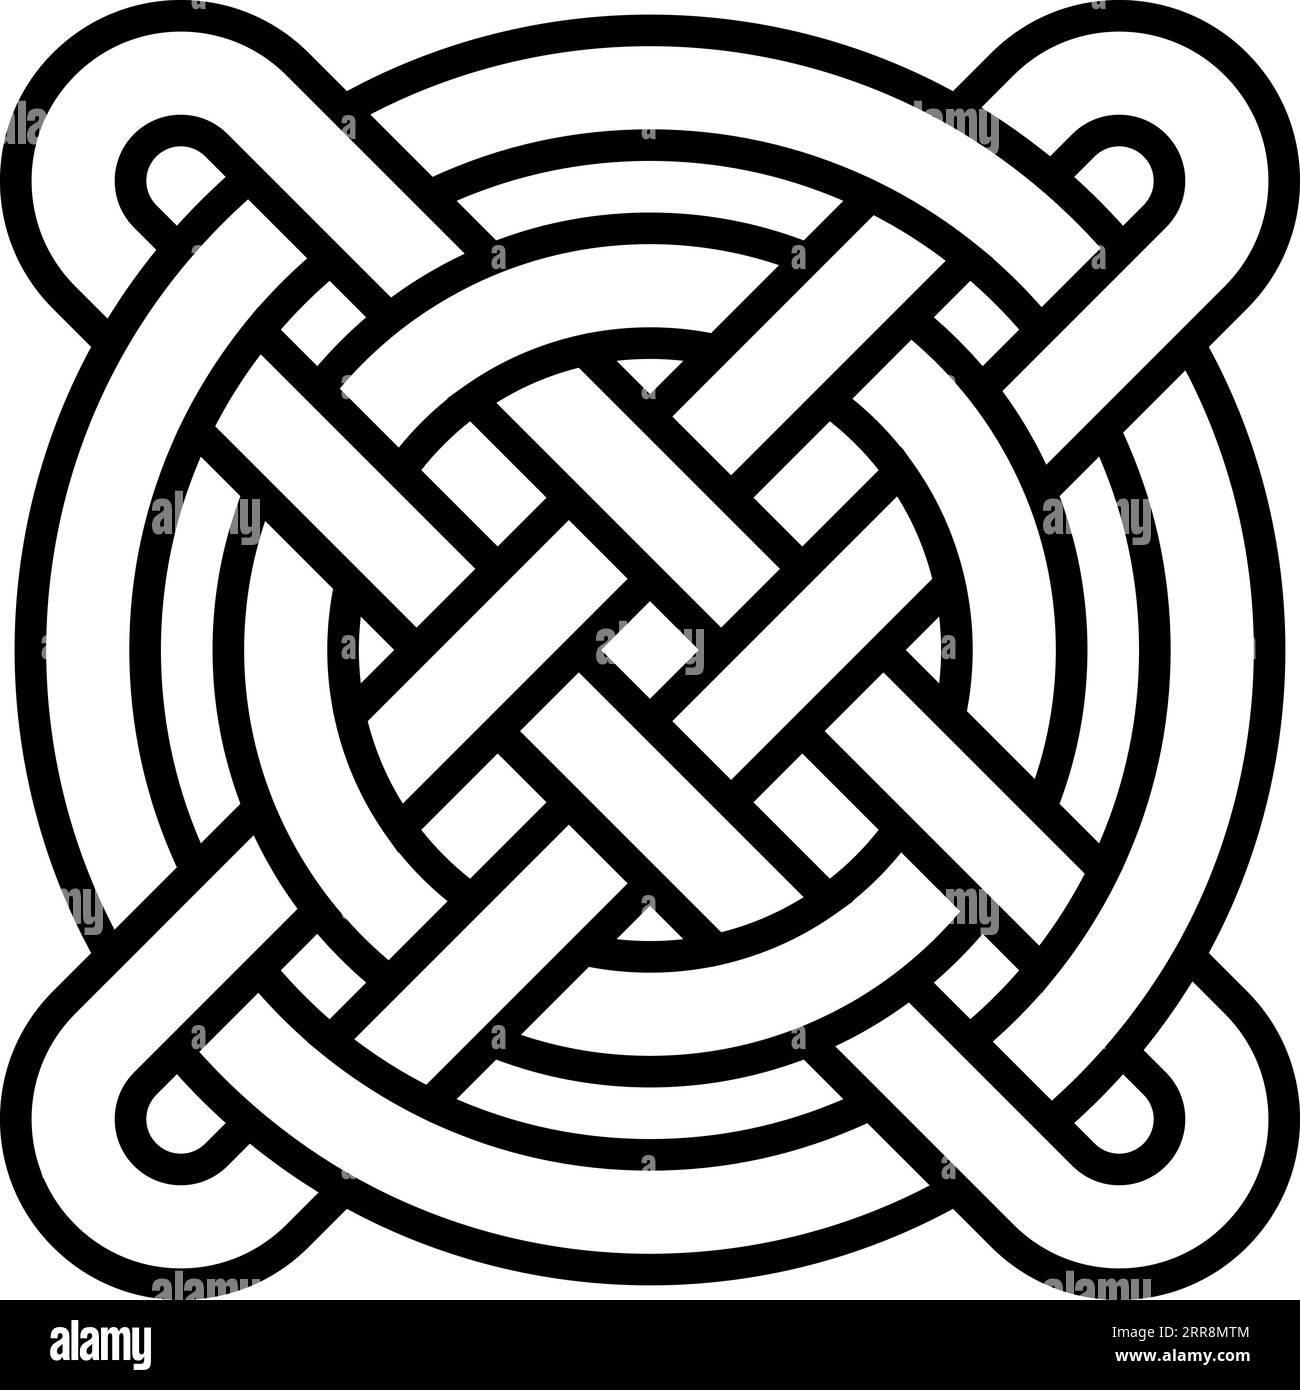 Nationale keltische Muster miteinander verflochtene Kreise kreuzen chinesische Musterweben Stock Vektor